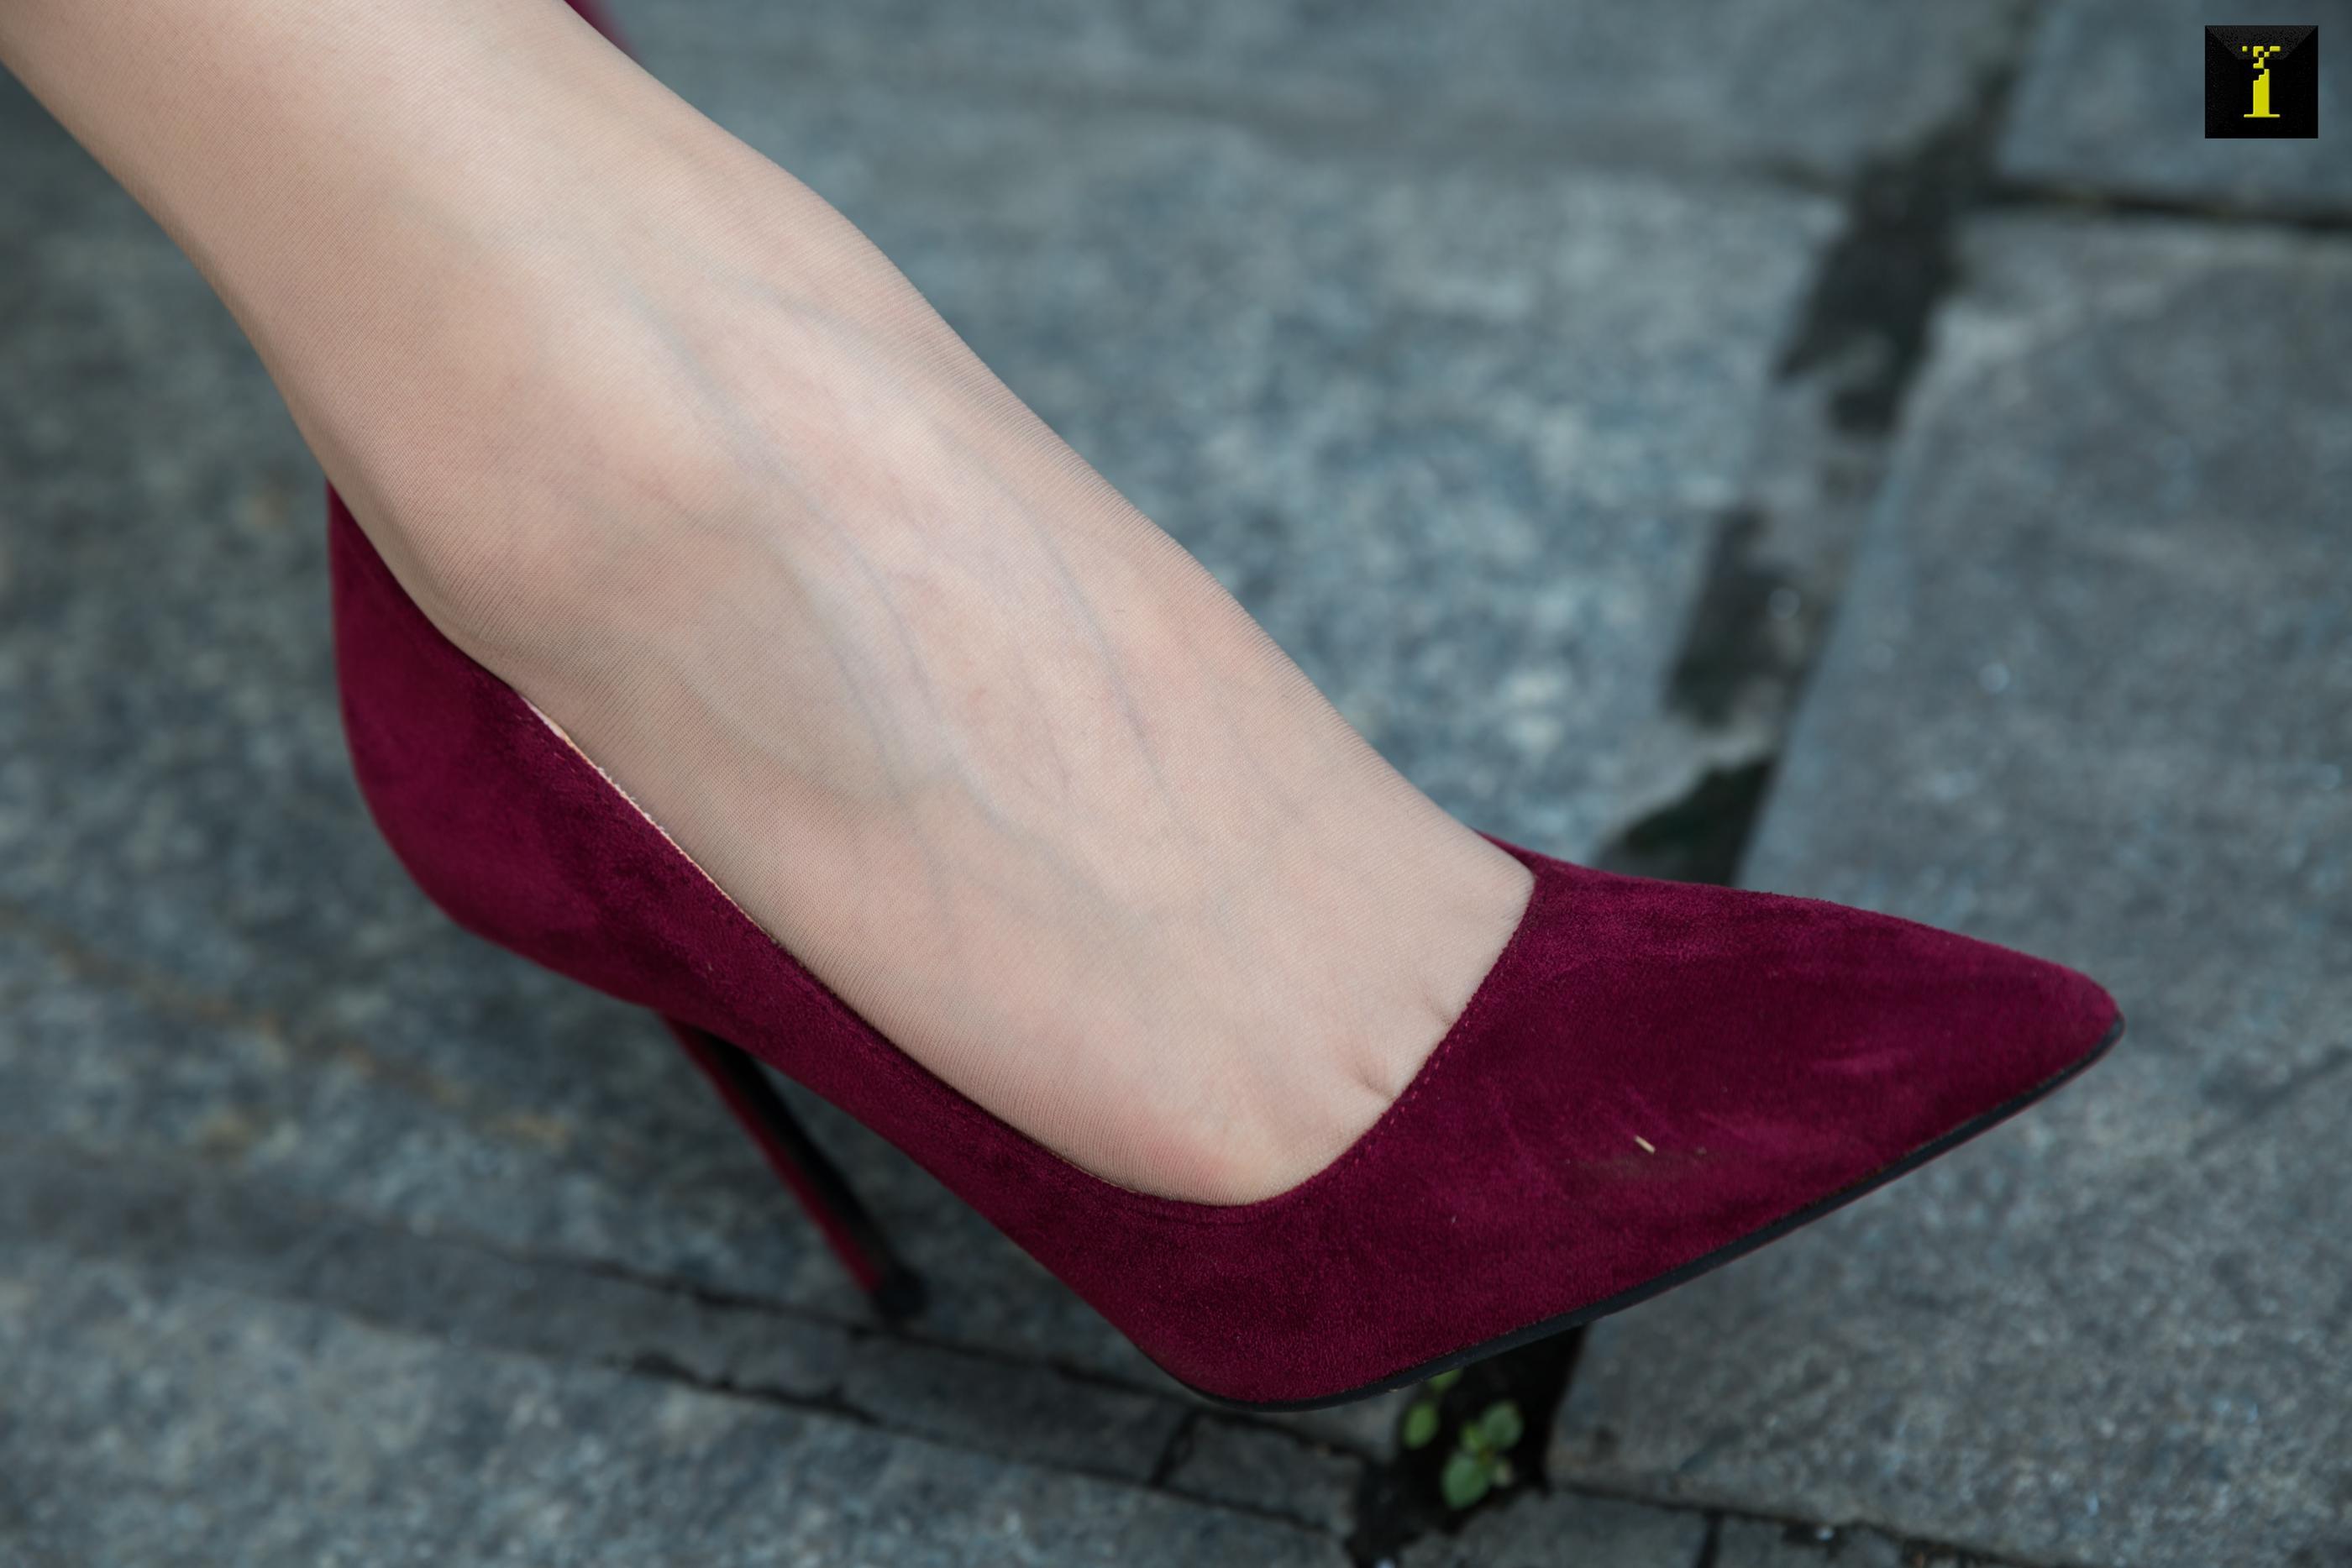 12 / 05 / 2019 sishengjia 636: crape myrtle - change into new high heels